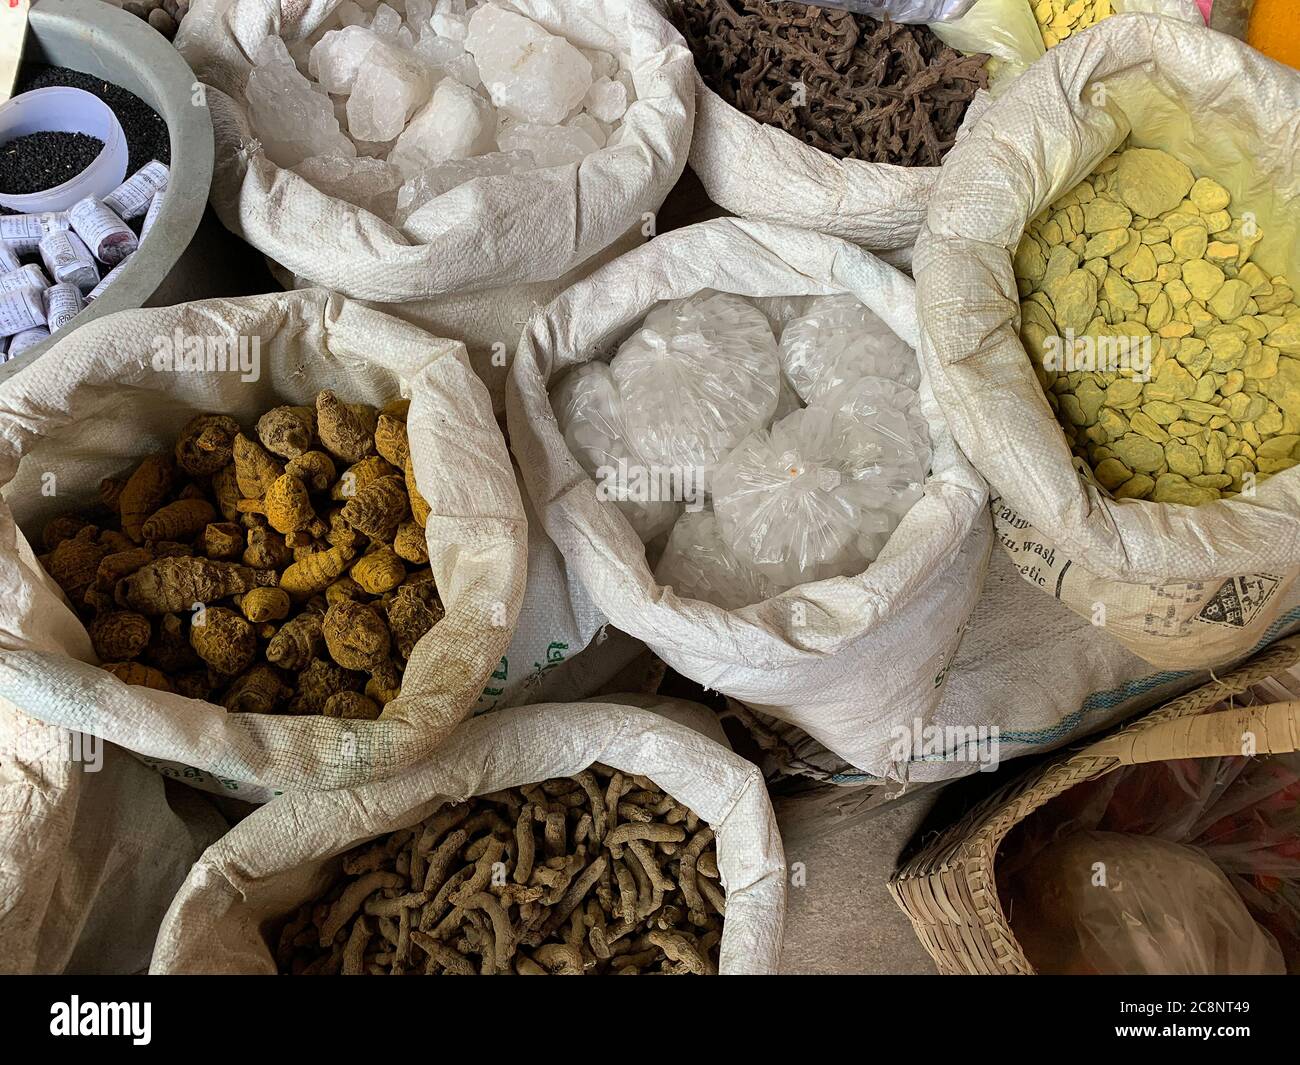 Sacs de hessois blancs contenant des épices et des légumes-racines typiques d'Asie, exposés sur le marché birman Banque D'Images